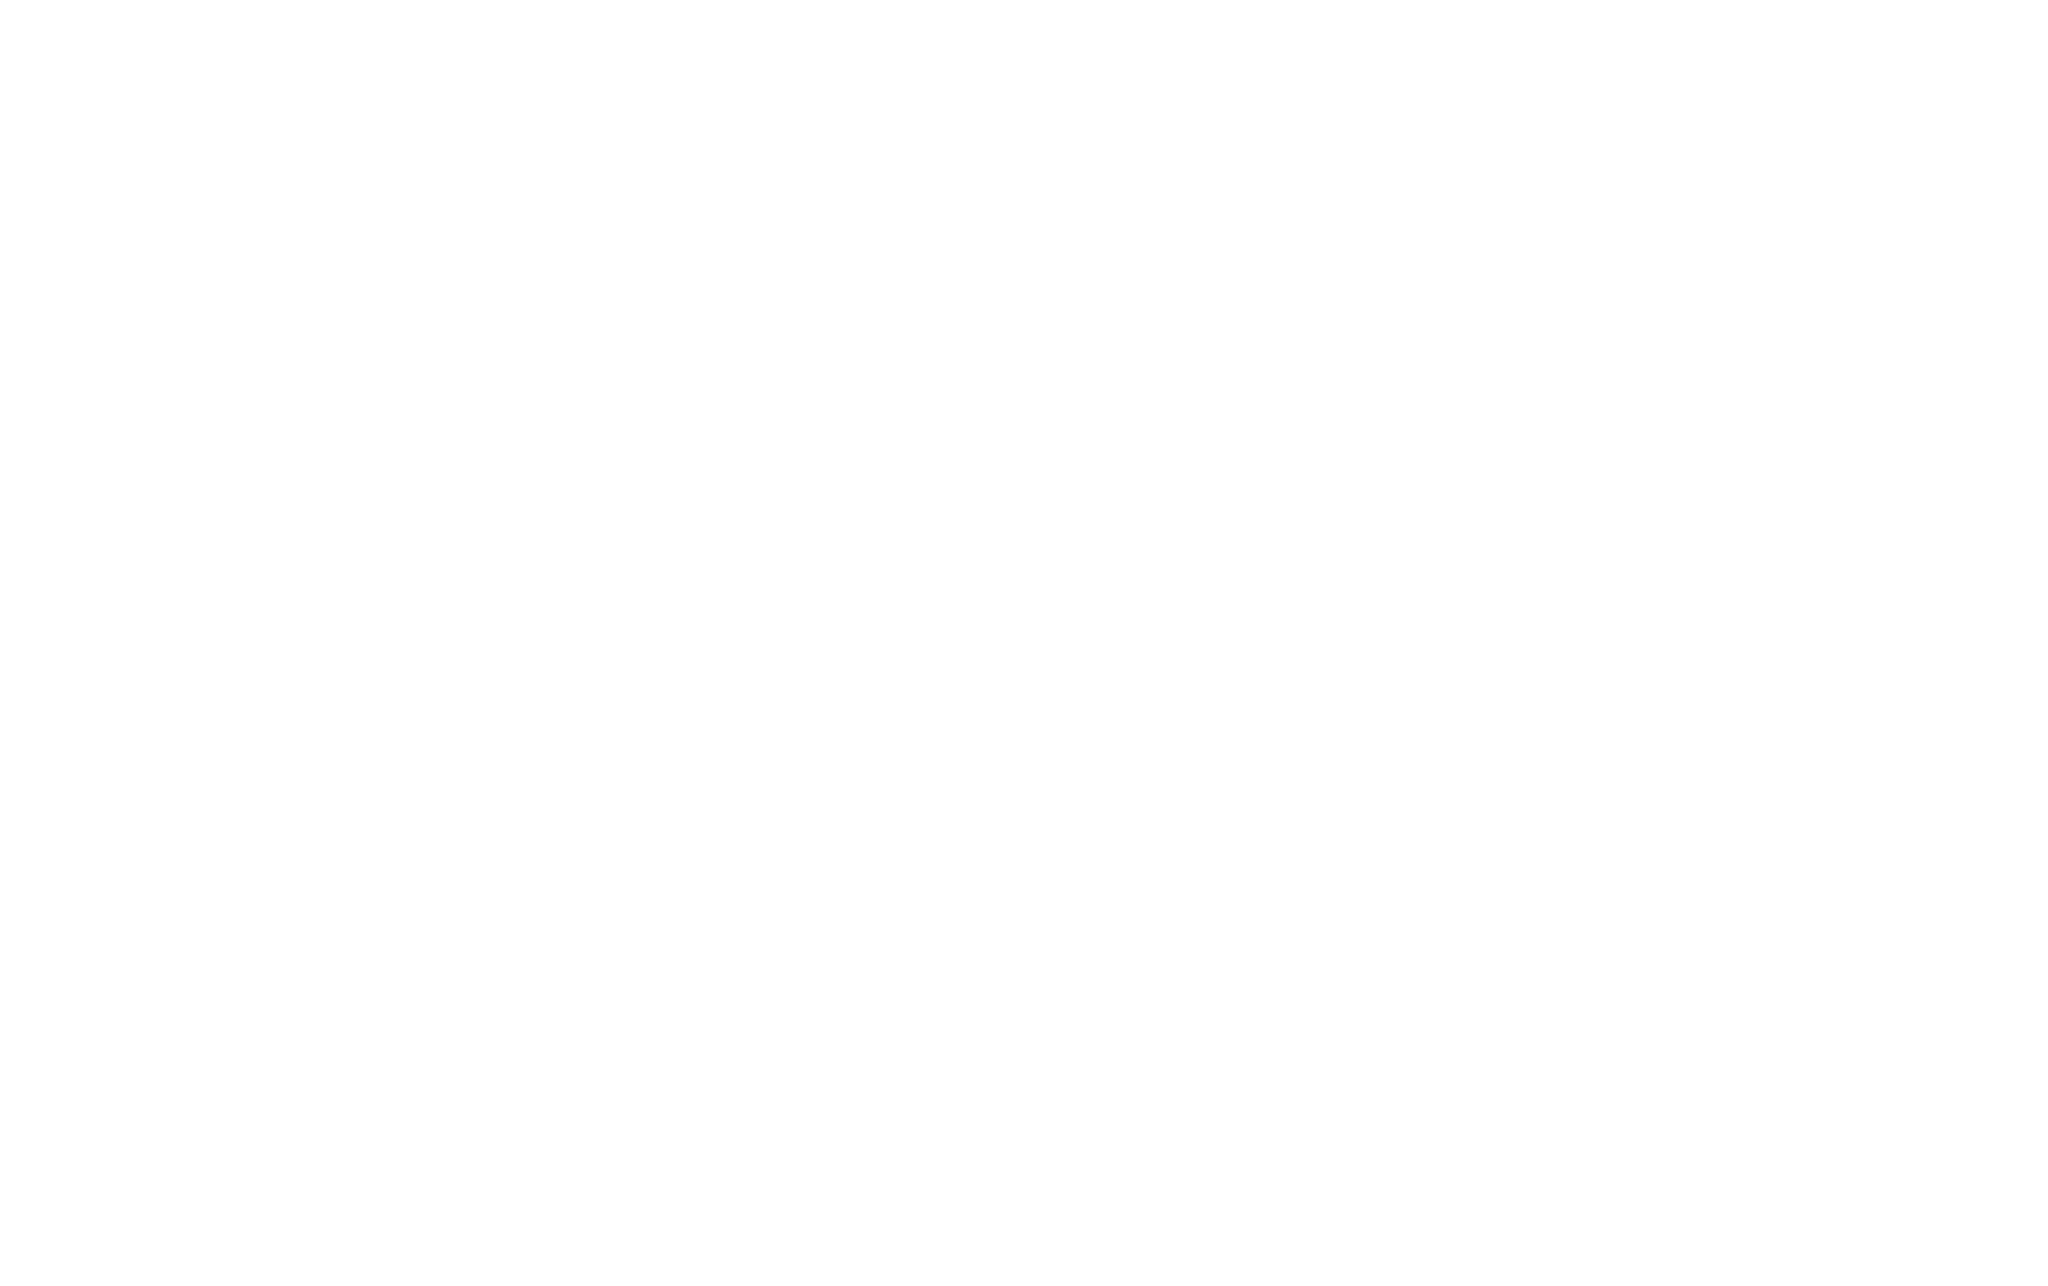 NRB